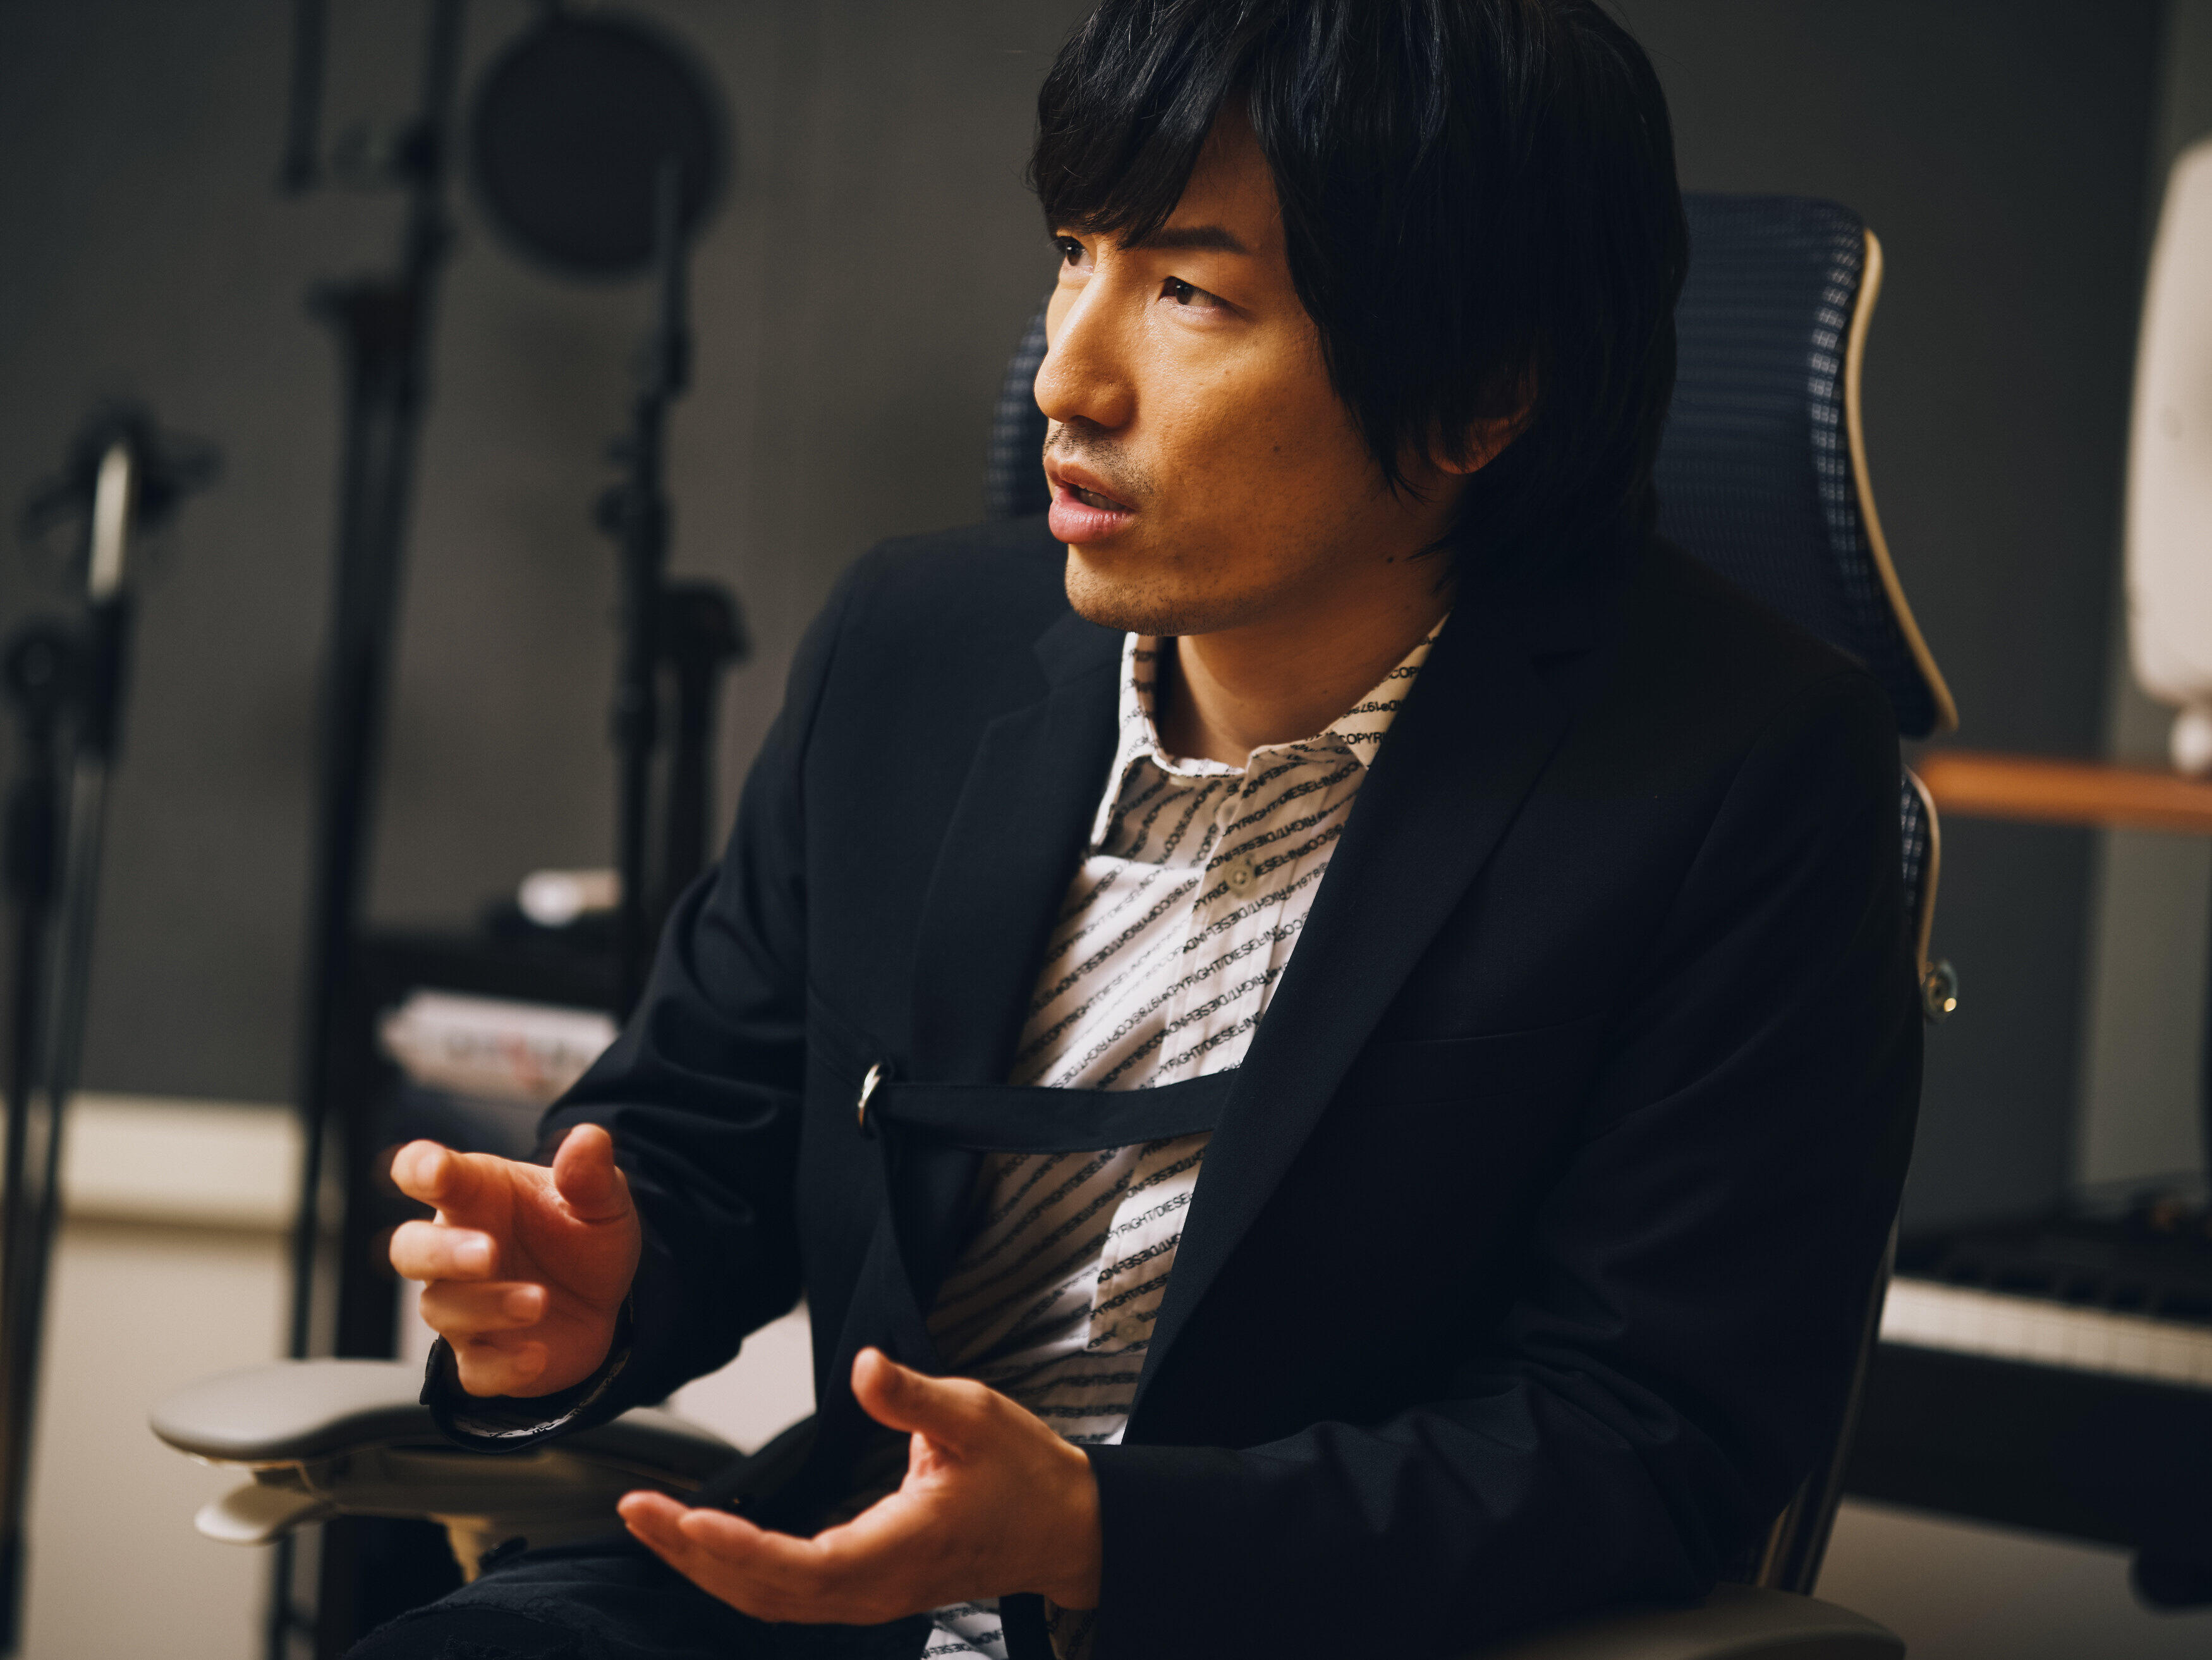 デビュー15周年を迎えた澤野弘之。劇伴作家として、SawanoHiroyuki[nZk] ではアーティストとして、ドラマティックなサウンドでロマンティシズムとグルーヴ感を追求し続ける